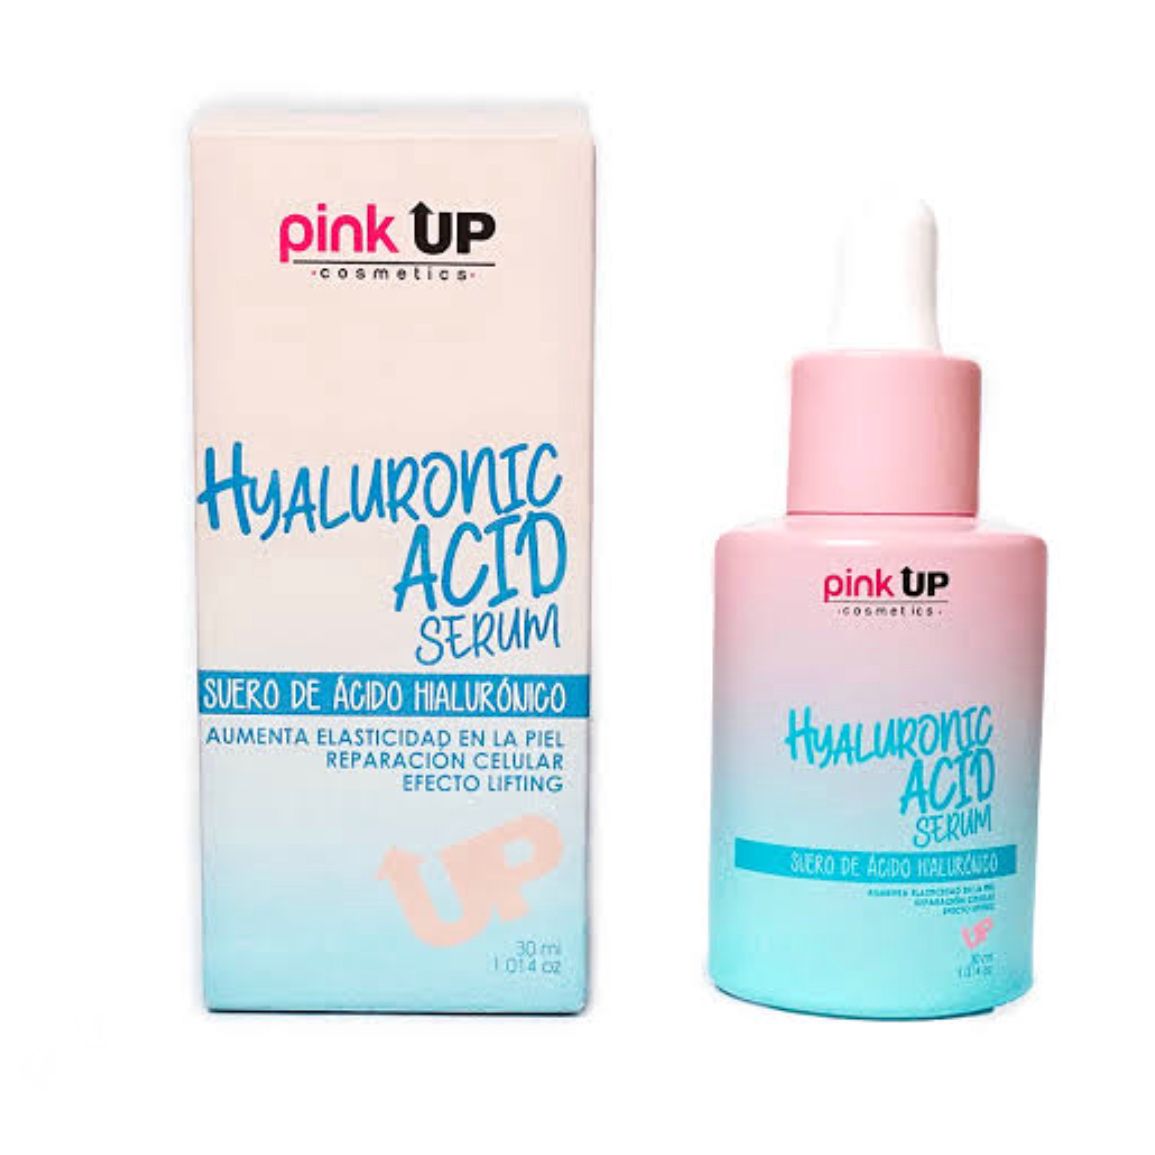 Hyaluronic acid serum pink up 07